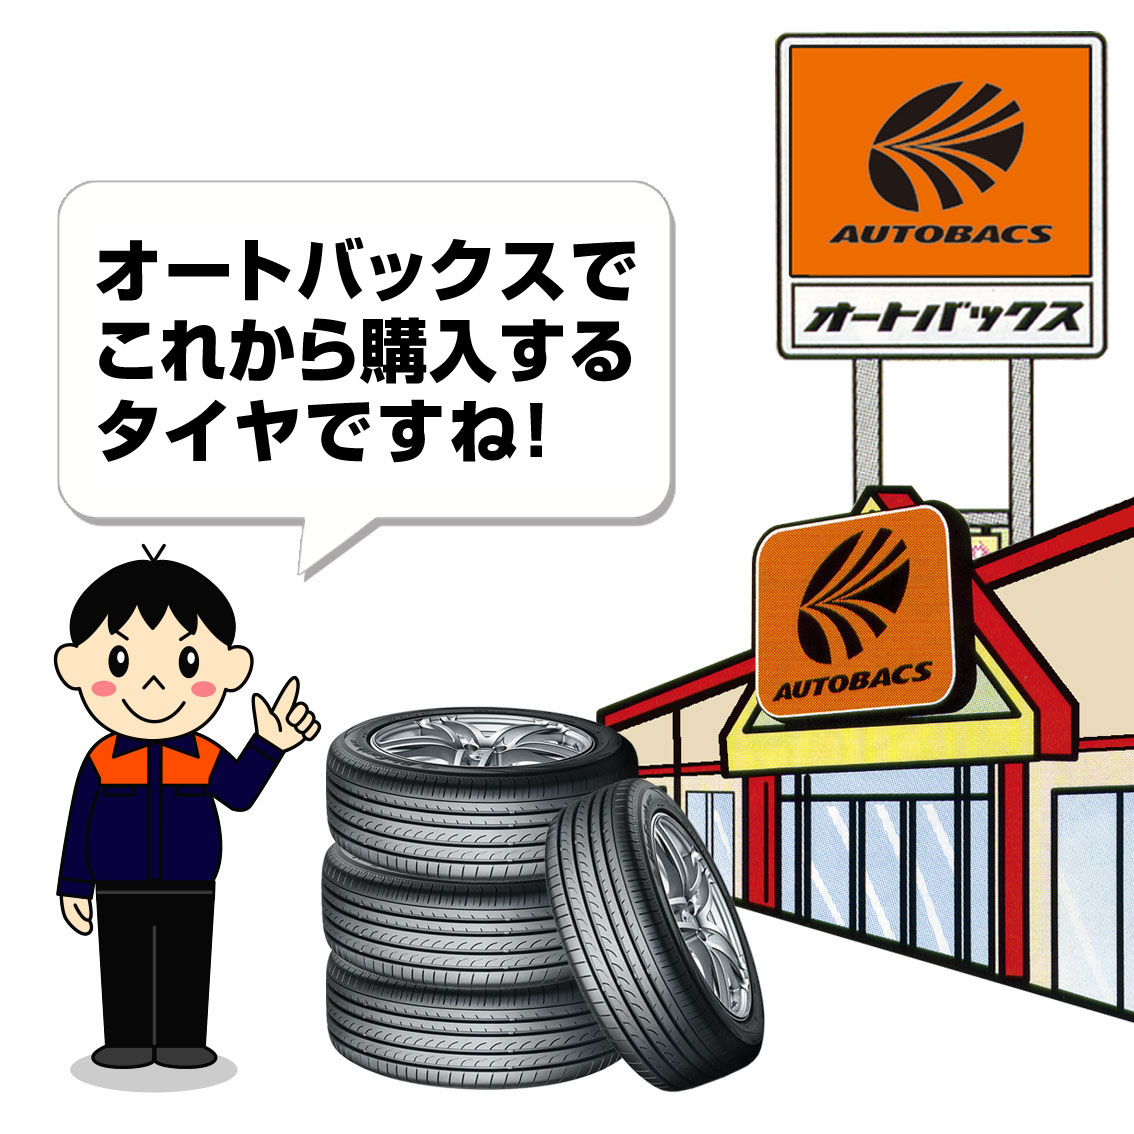 新規購入するタイヤの交換予約 オートバックス古川店